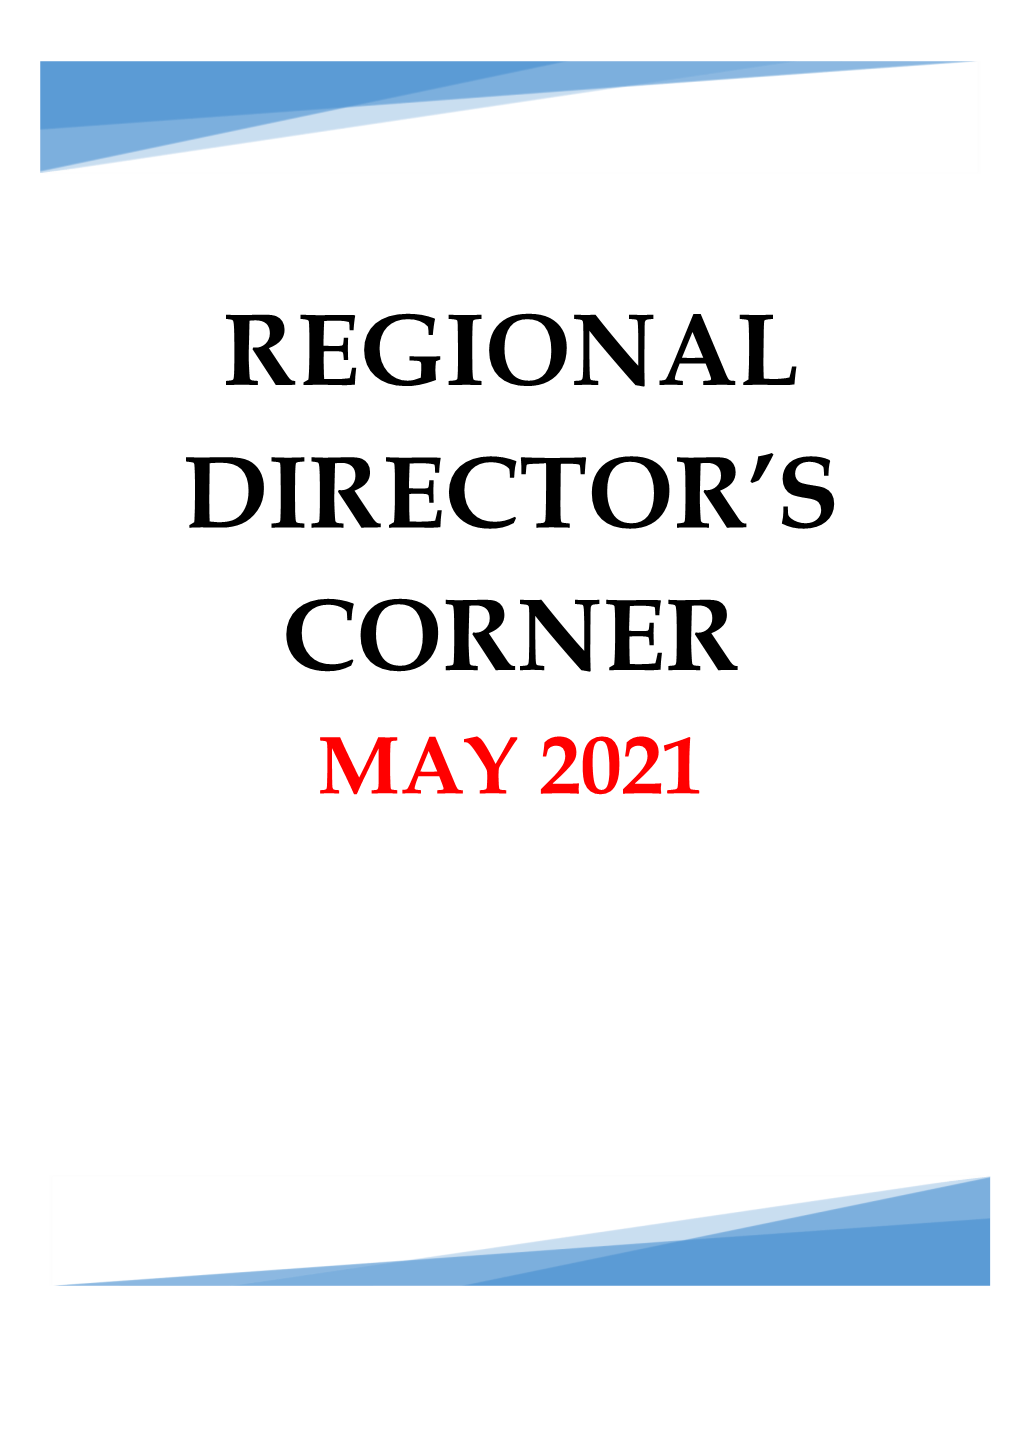 Regional Director's Corner